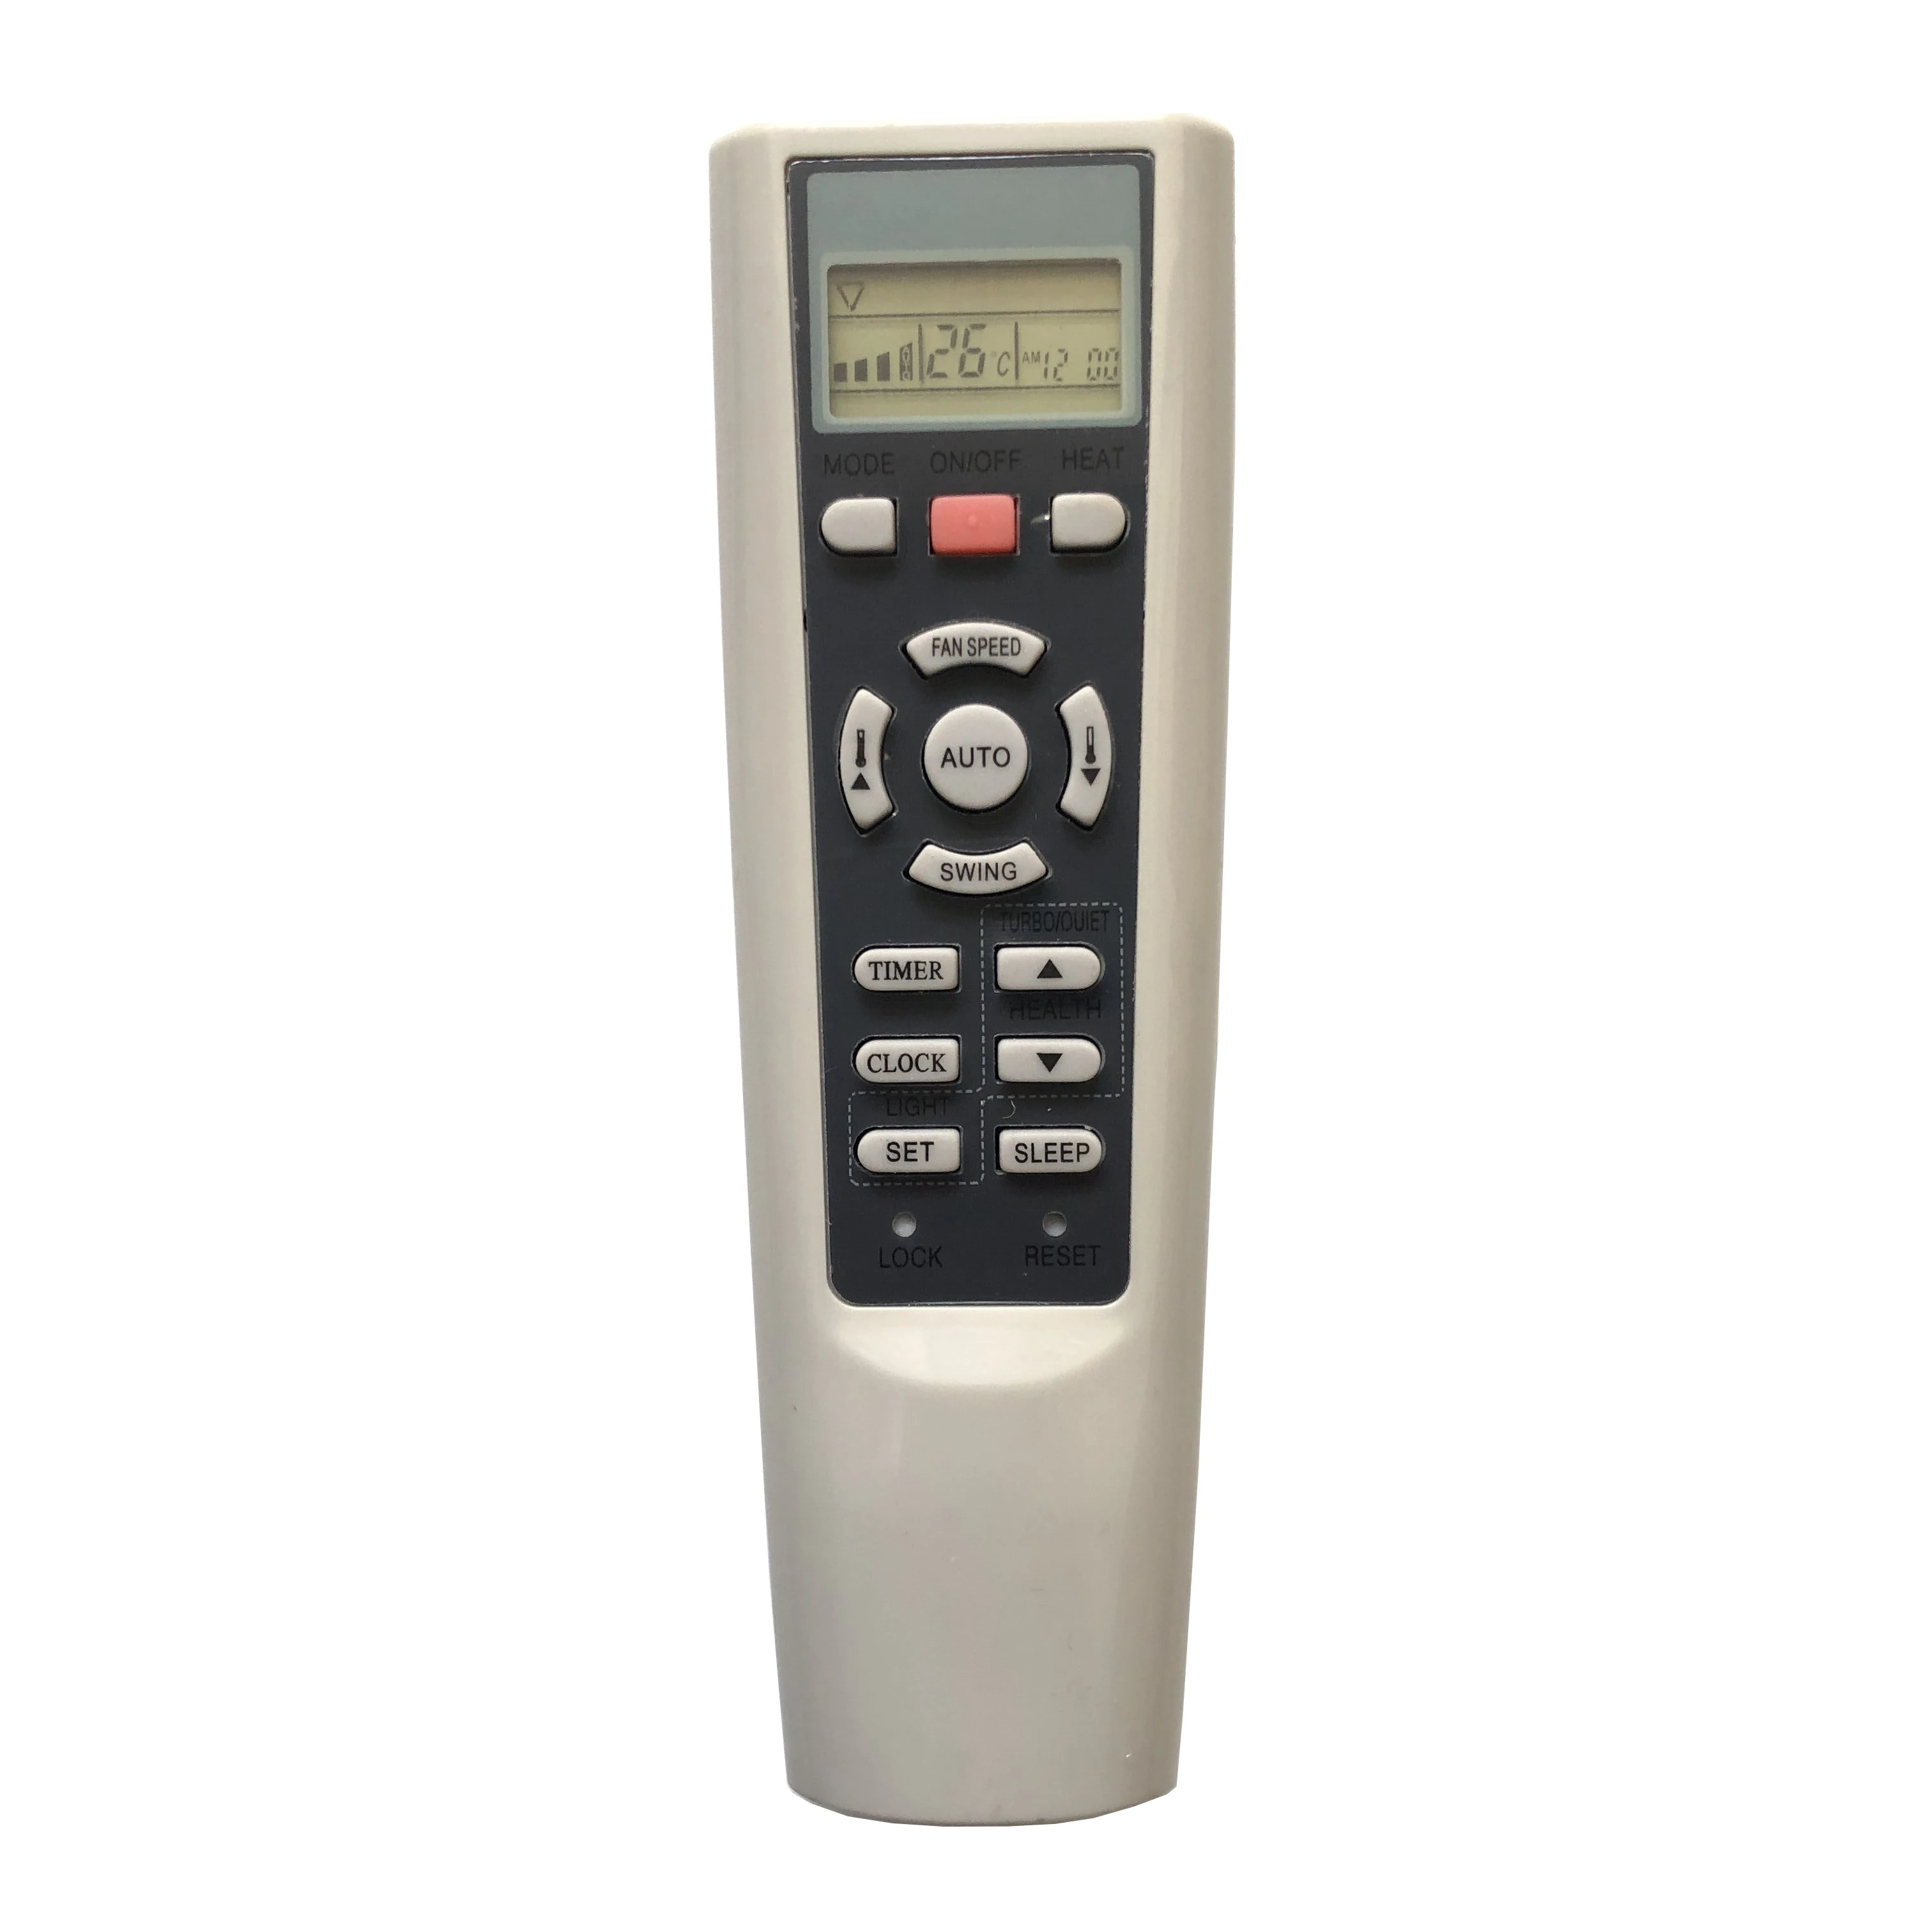 

Suitable for Haier yr-w08 yl-w08 yr-w03 yr-w02 yr-w01 yr-w04 yr-w06 yr-w07 yr-w05 air conditioner remote control